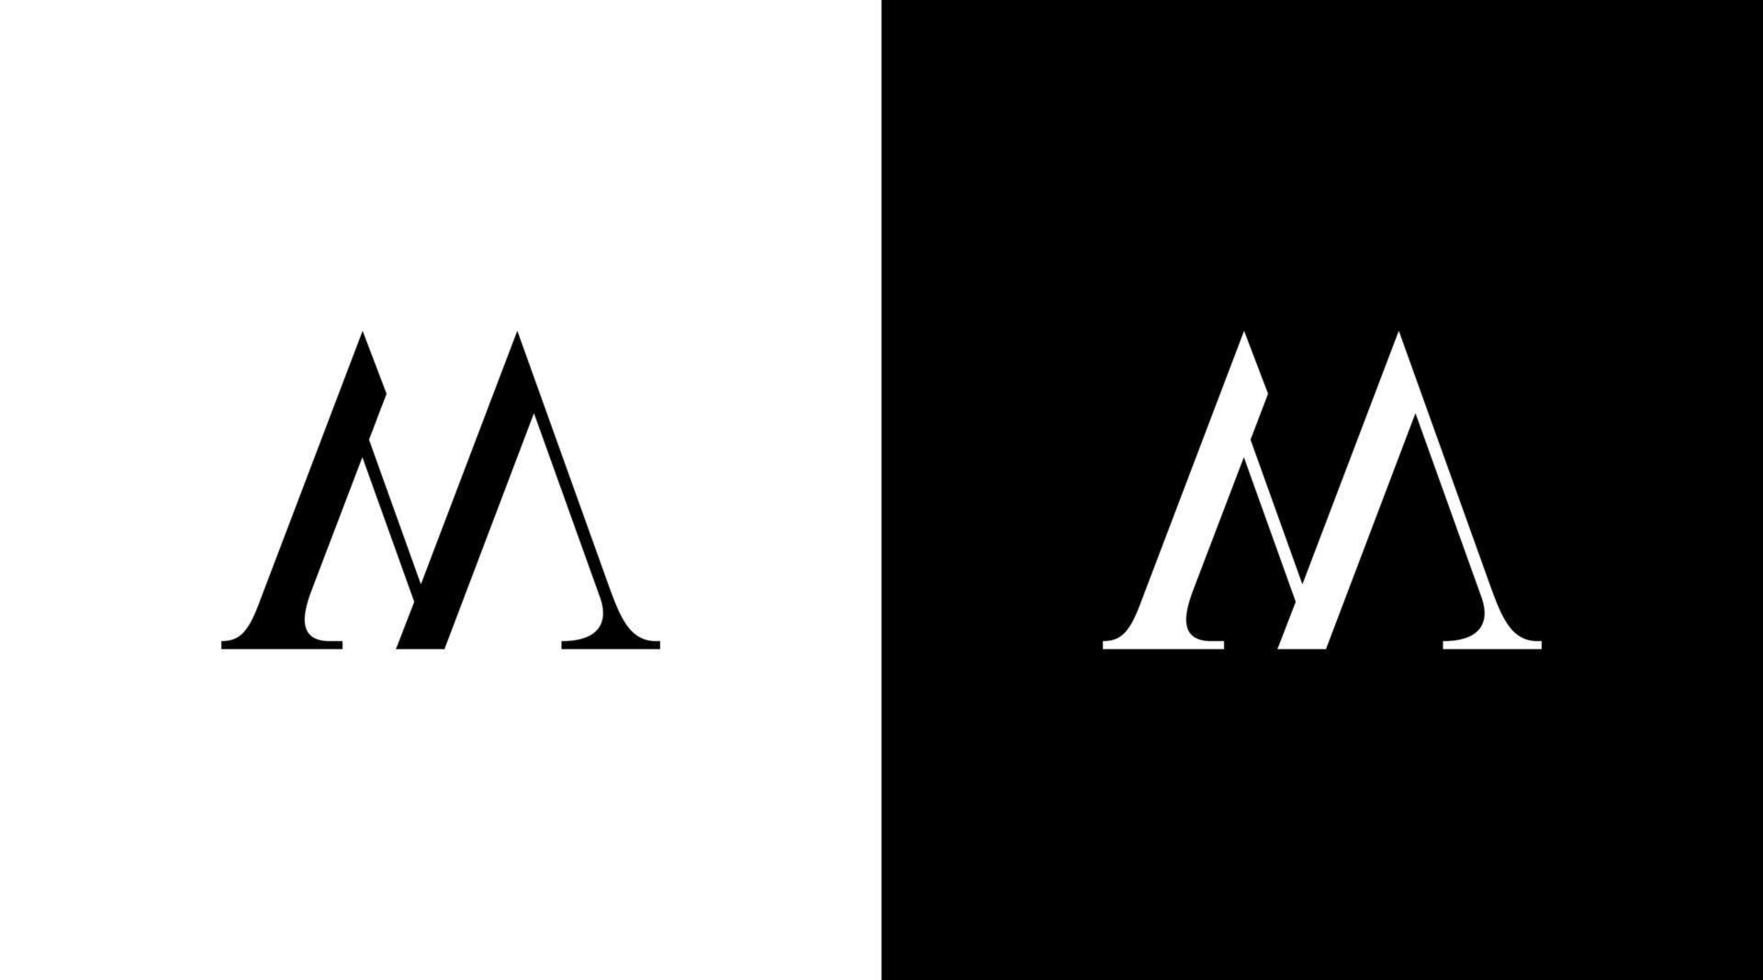 m vektor logotyp advokat monogram brev första svart och vit ikon illustration mönster mallar